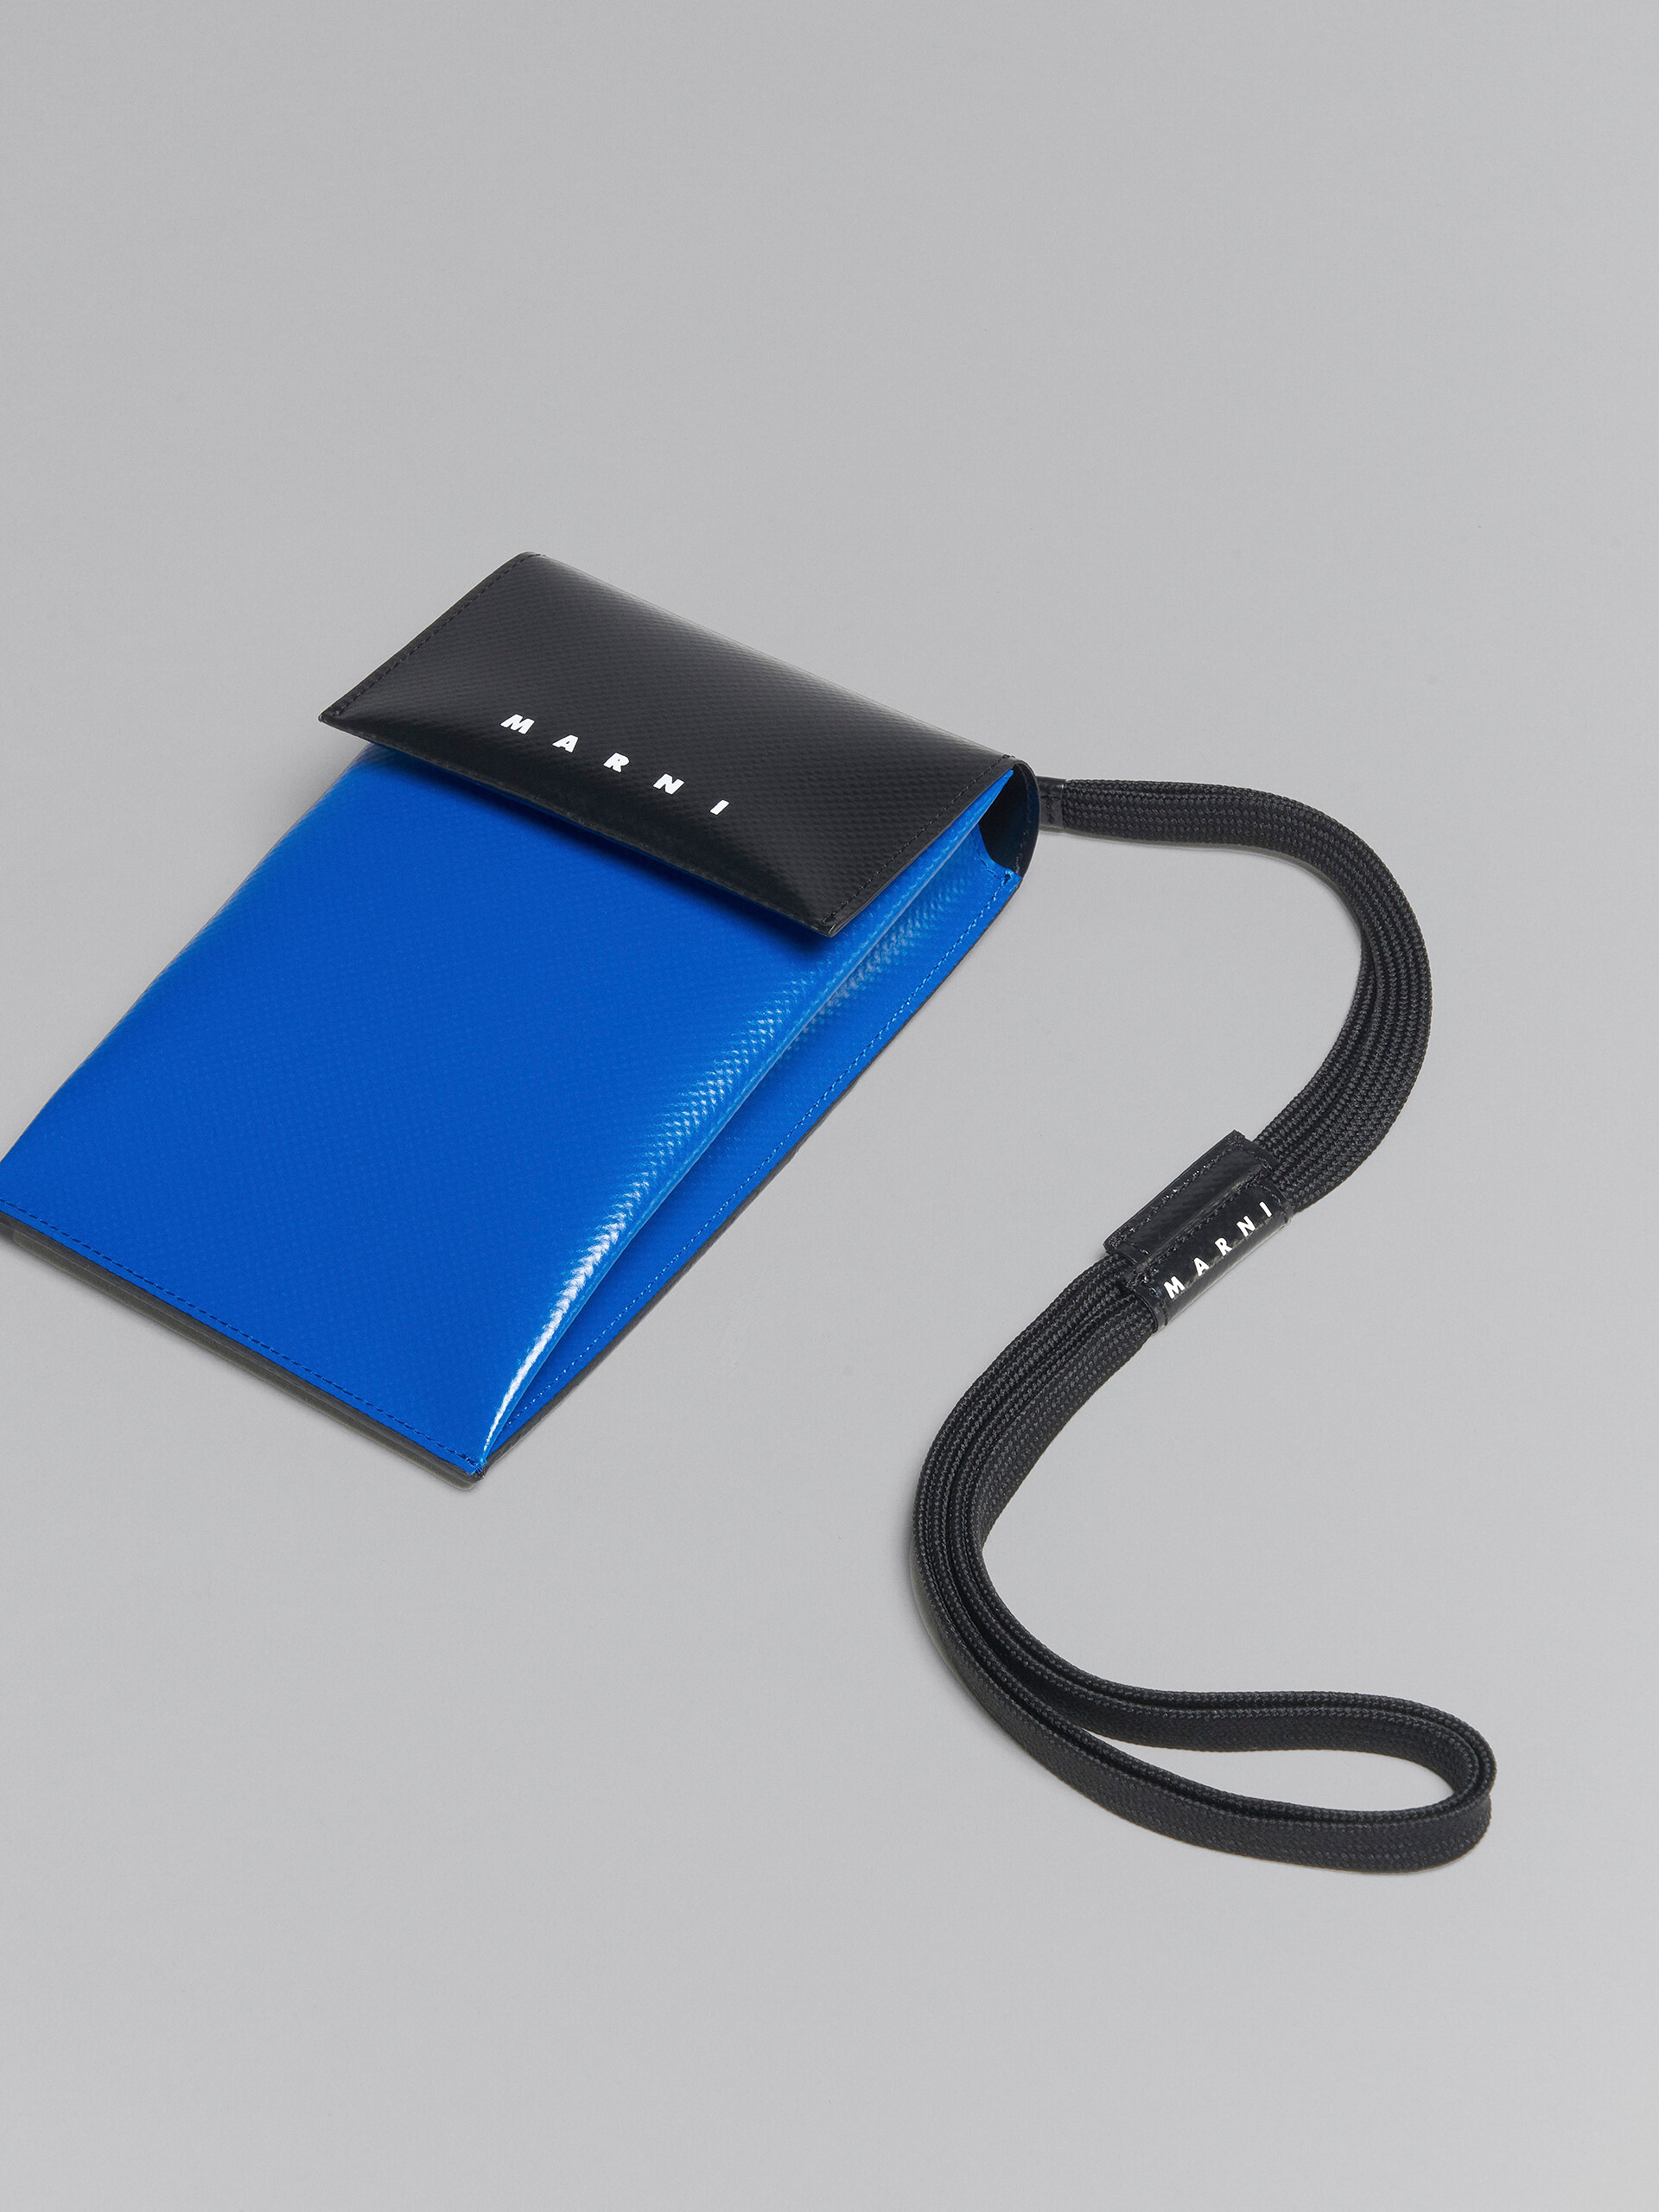 Smartphone-Hülle Tribeca in Blau und Schwarz - Brieftaschen & Kleinlederwaren - Image 5